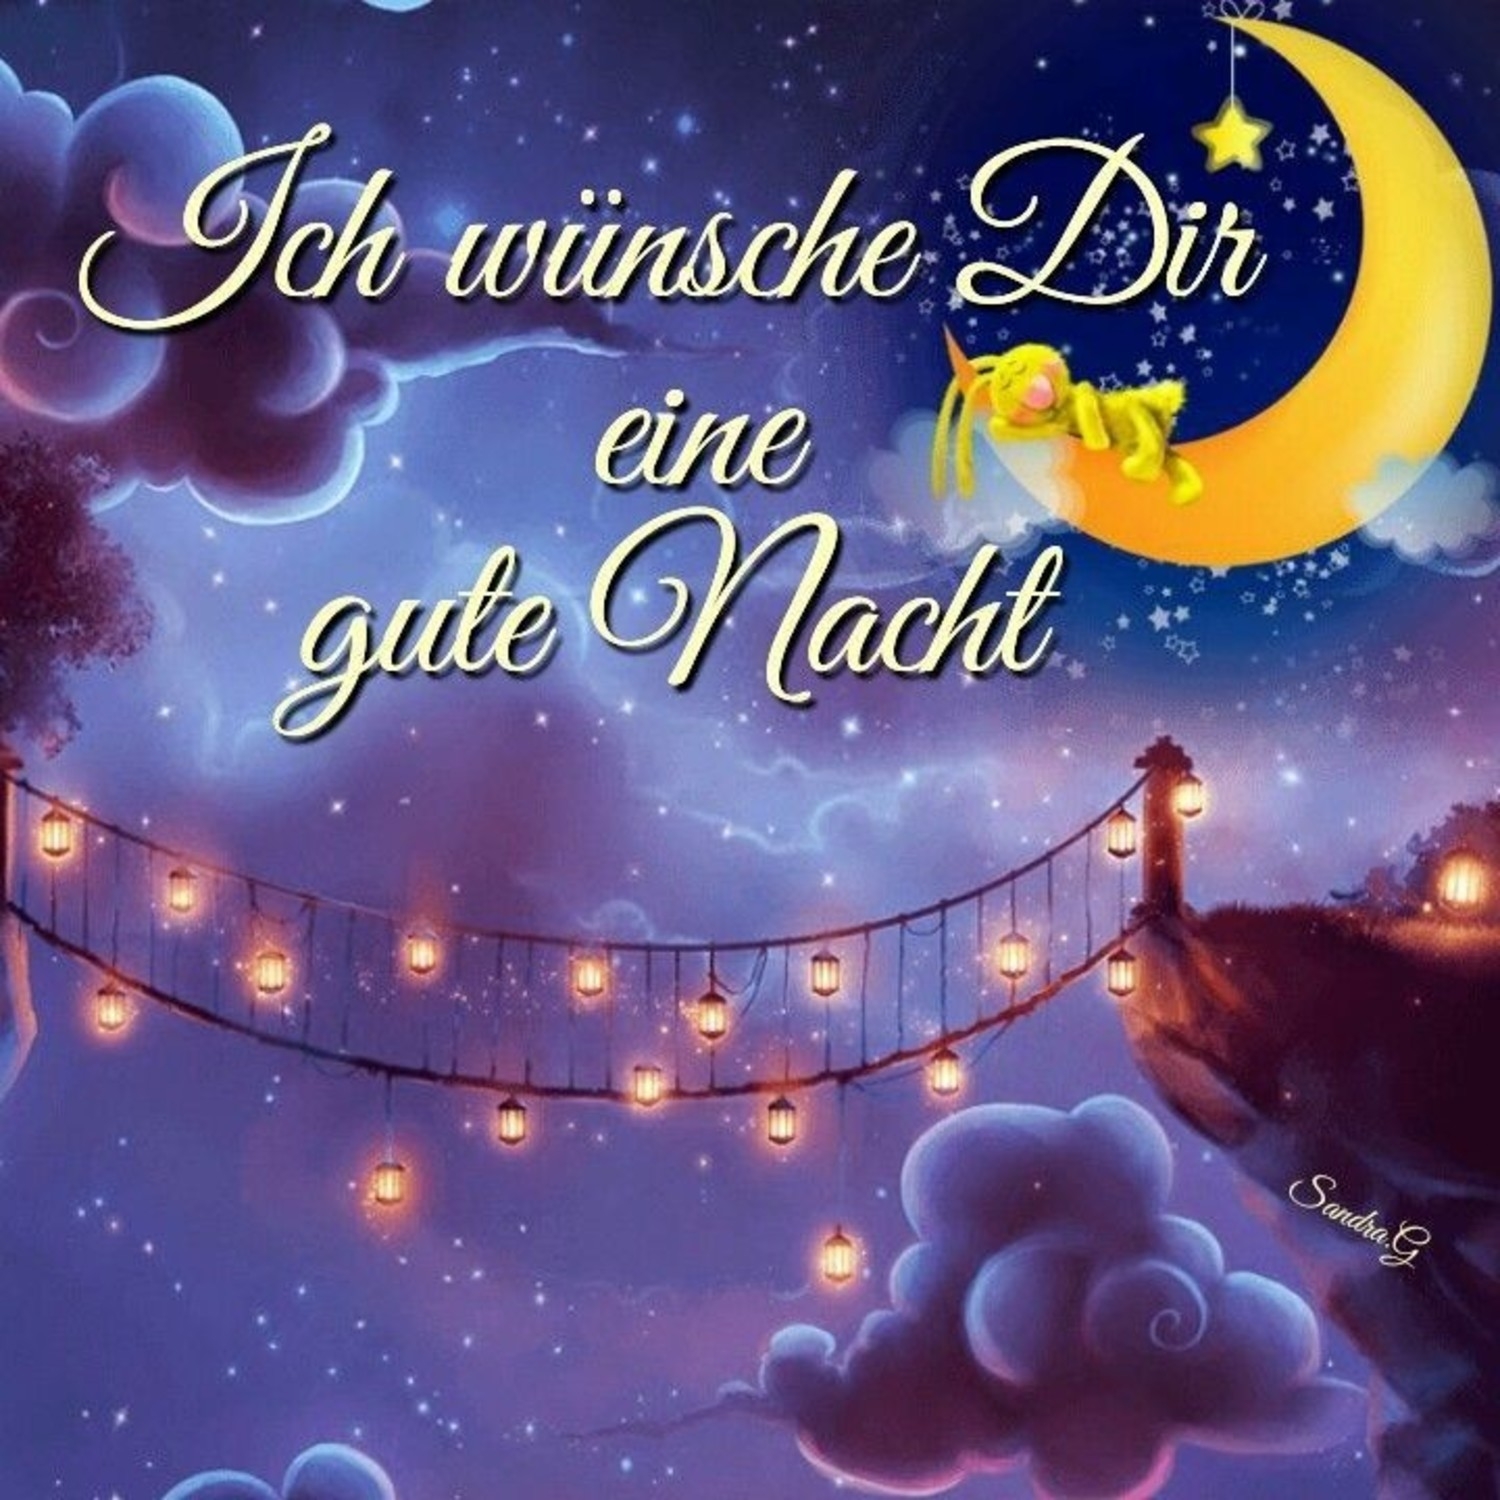 Доброй ночи по немецки. Спокойной ночи на немецком языке. Красивое пожелание спокойной ночи на немецком языке. Доброй ночи на немецком открытки.